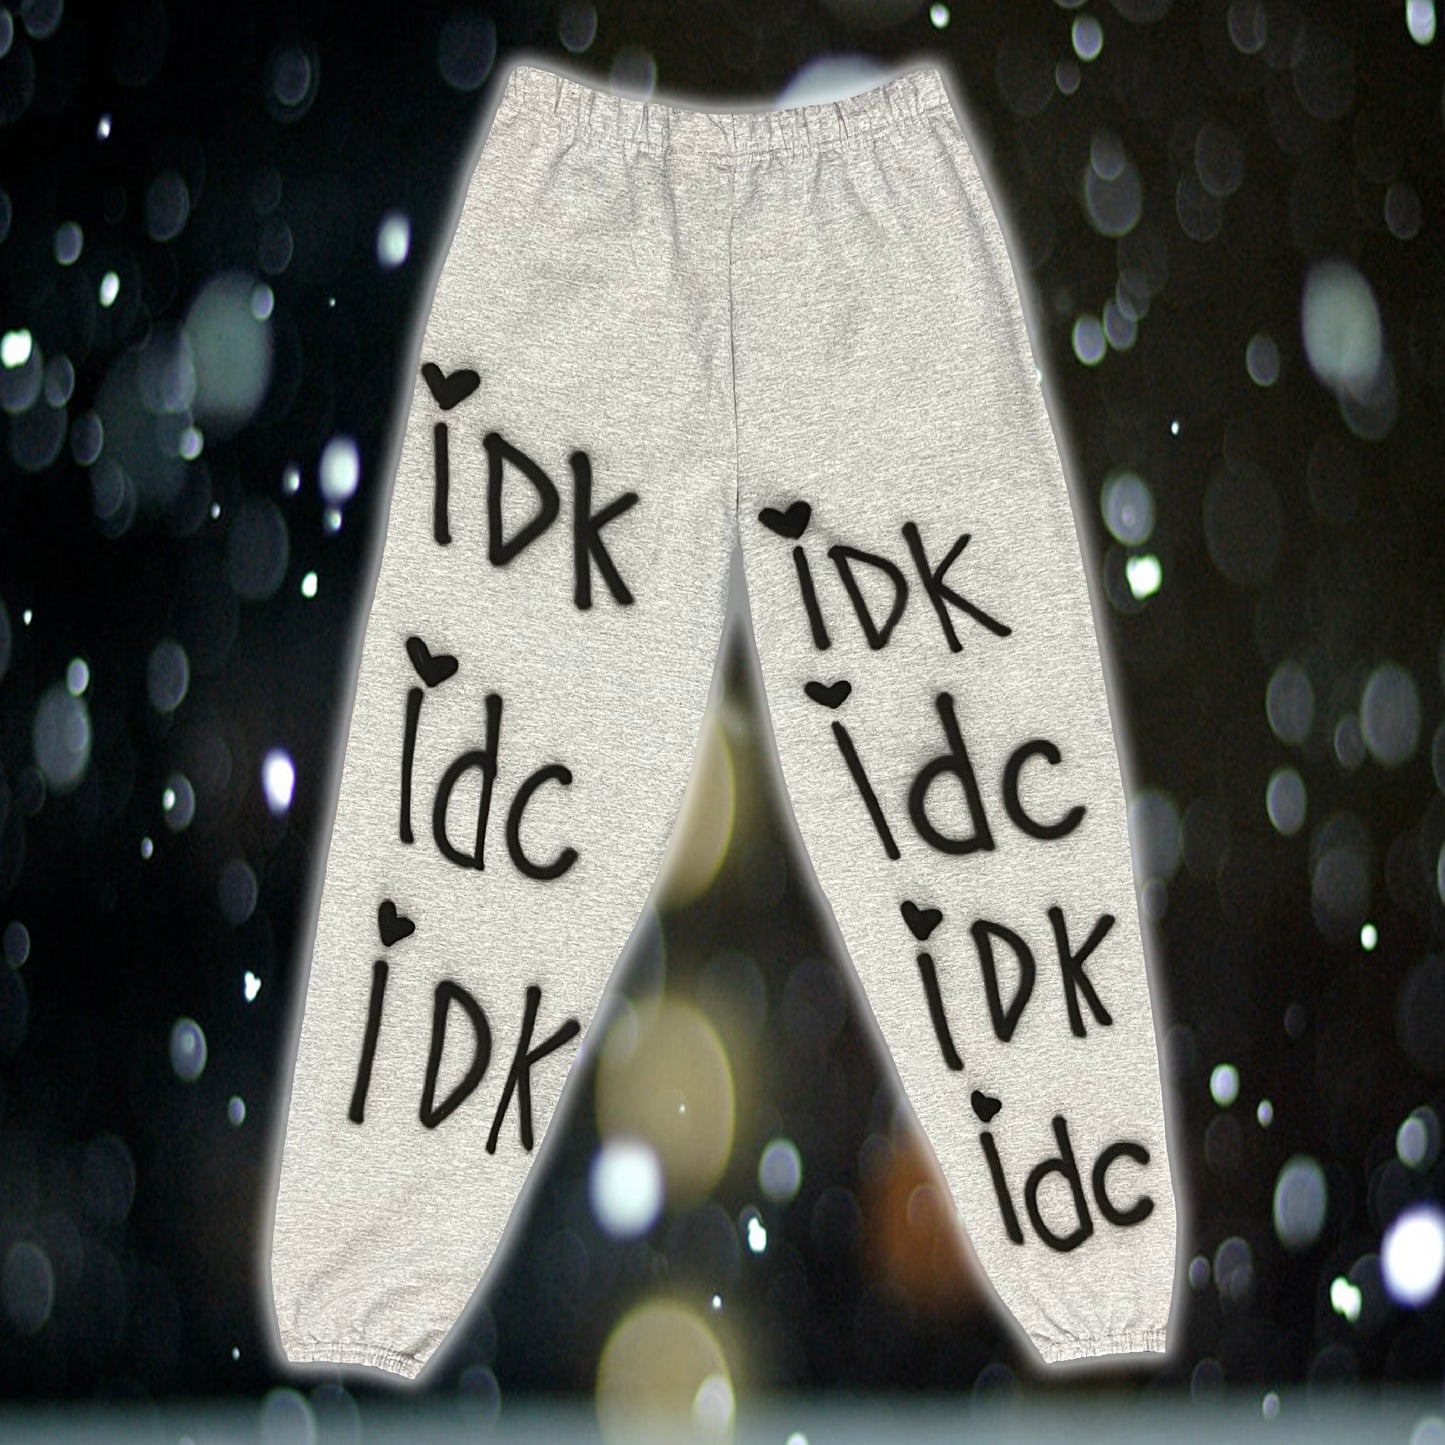 IDK IDC SWEATS